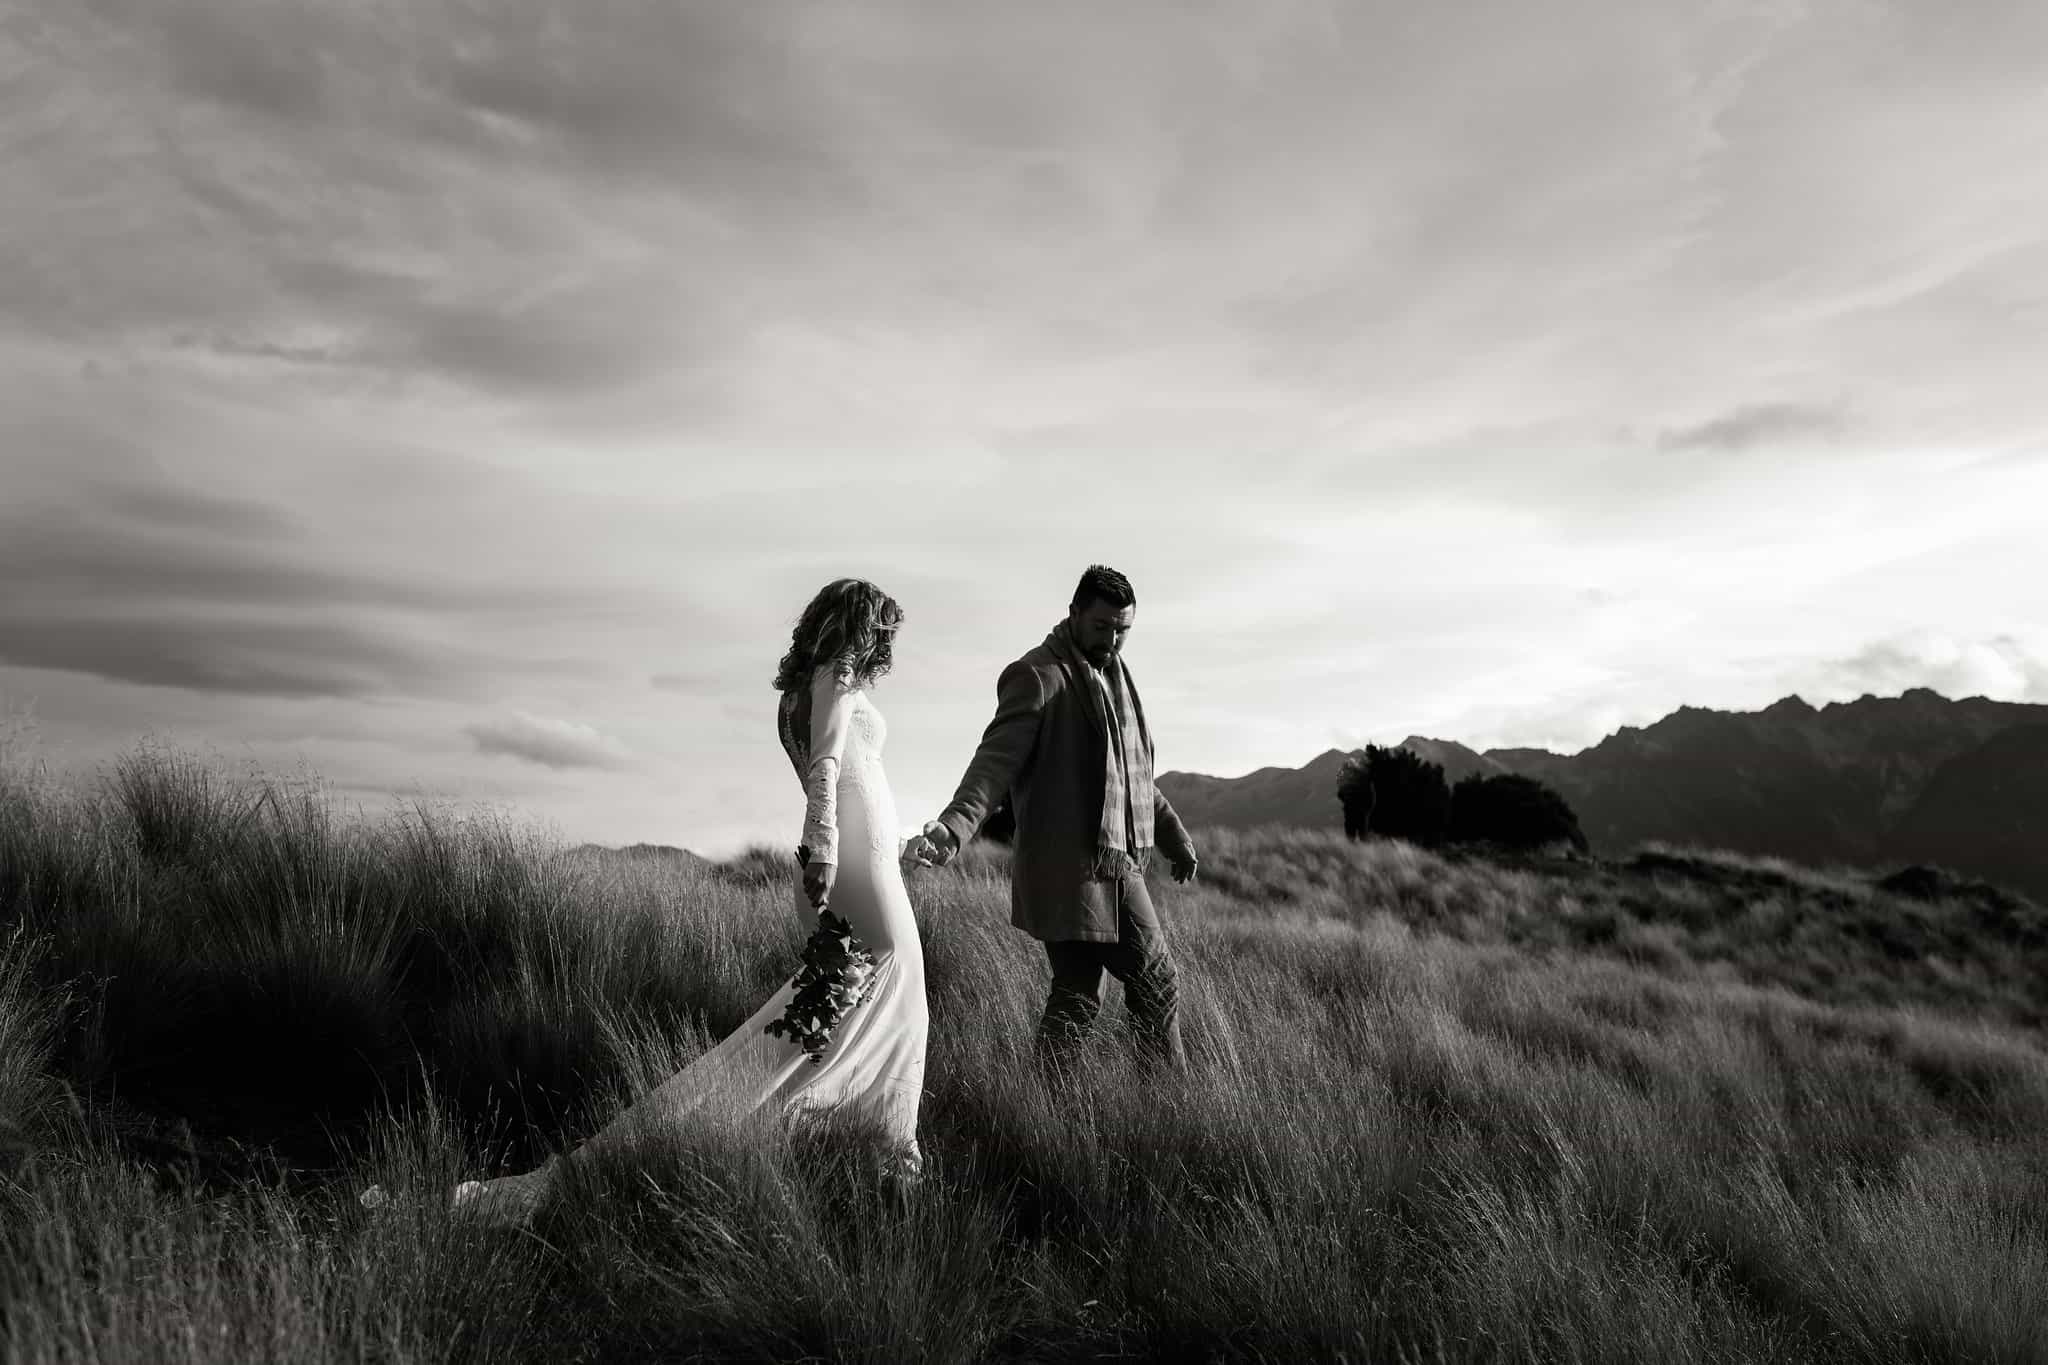 Winter Elopement Wedding Queenstown New Zealand Heli Weddings We Eloped Dawn Thomson 3